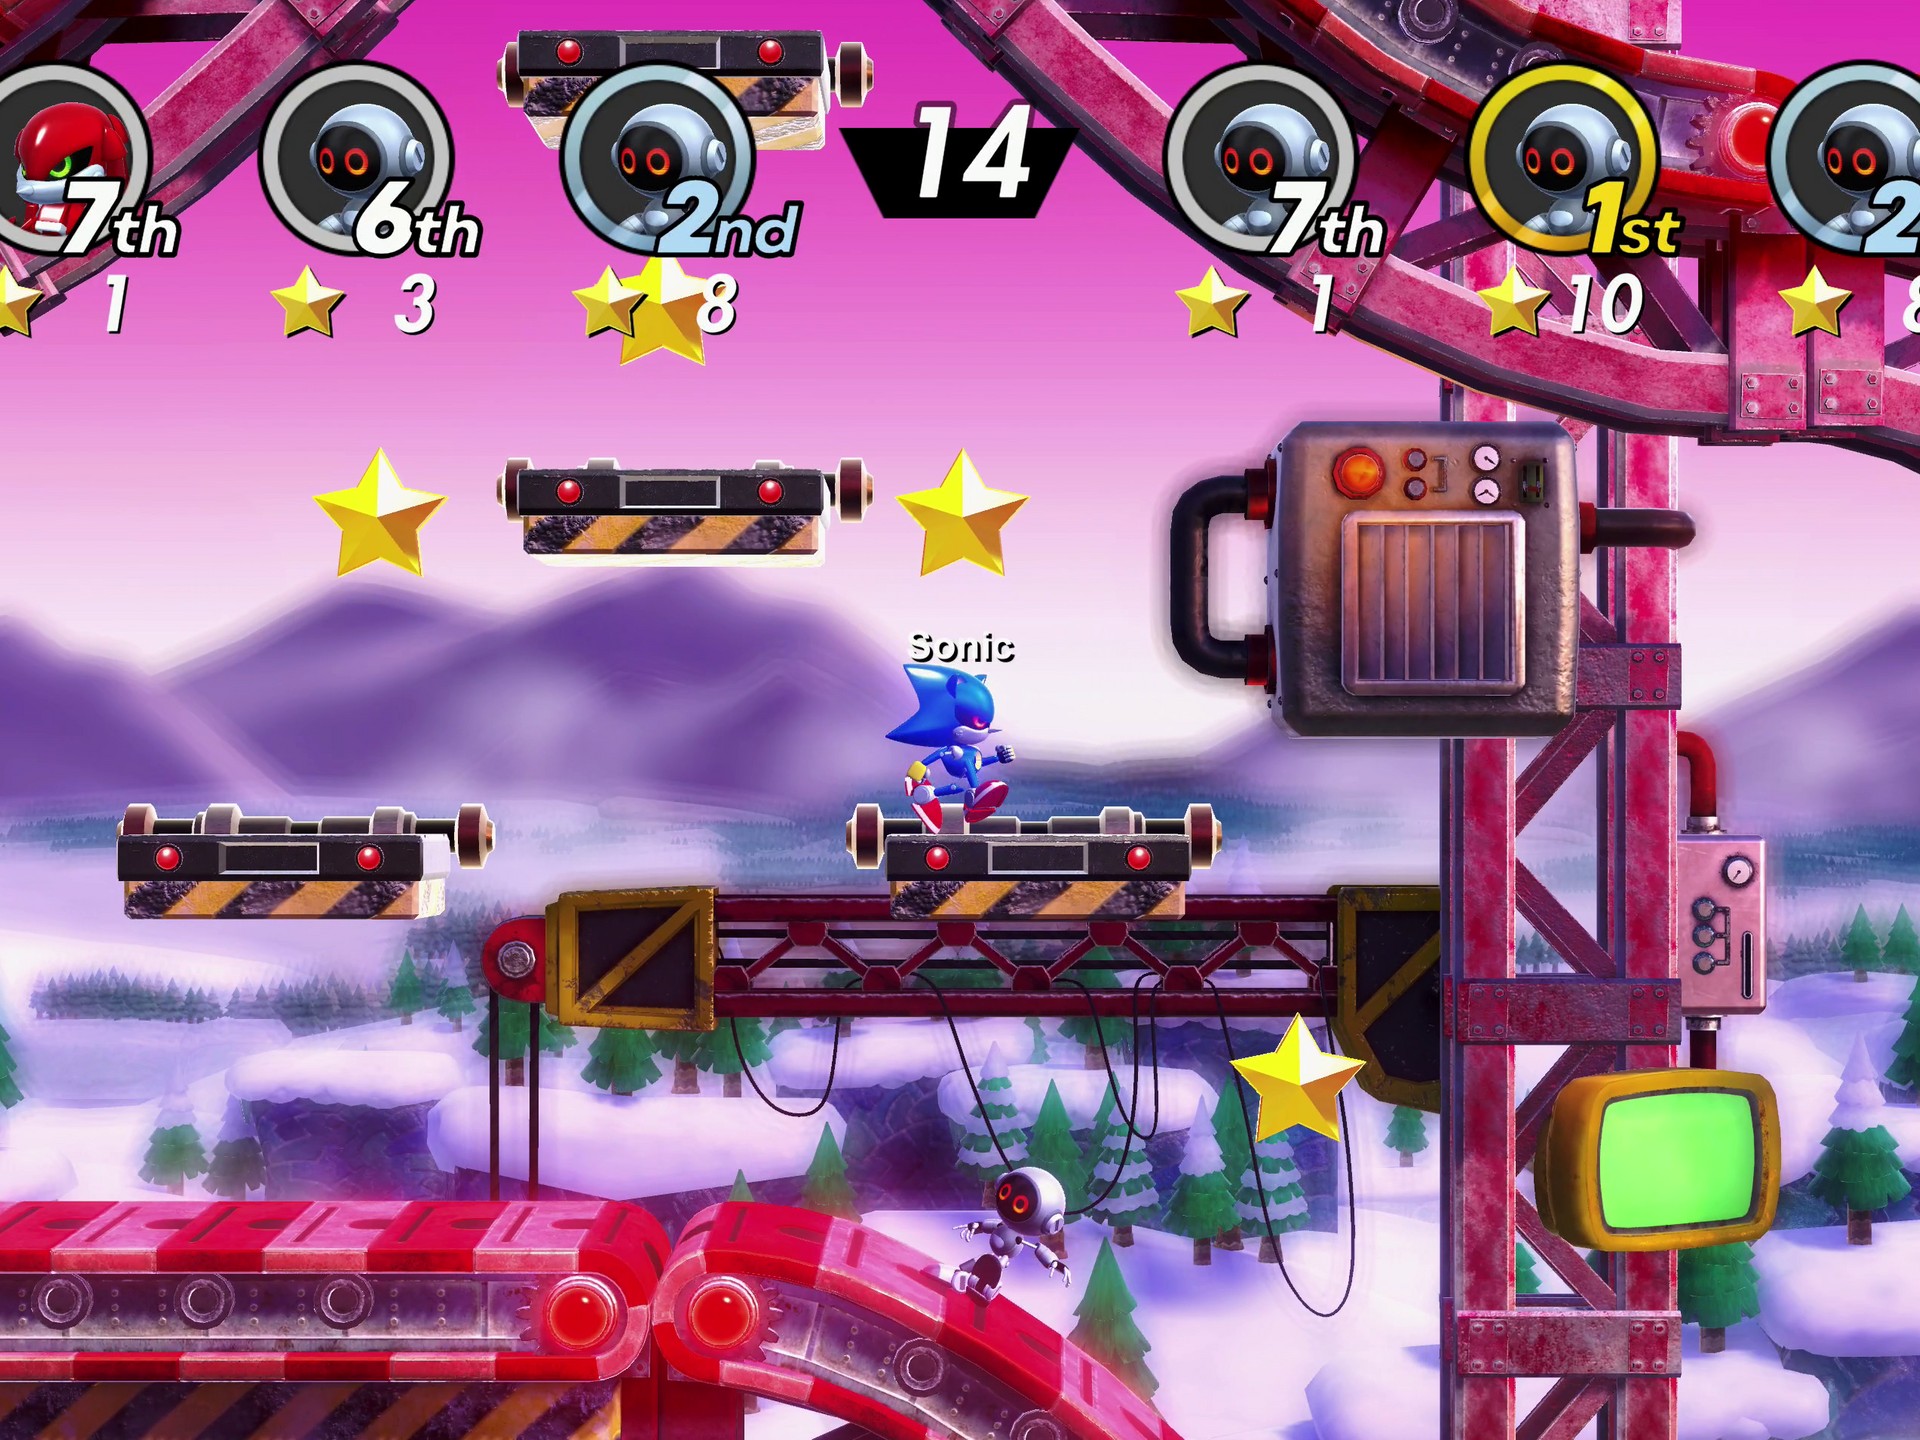 Sonic Superstars: uma aventura nostálgica com novos recursos